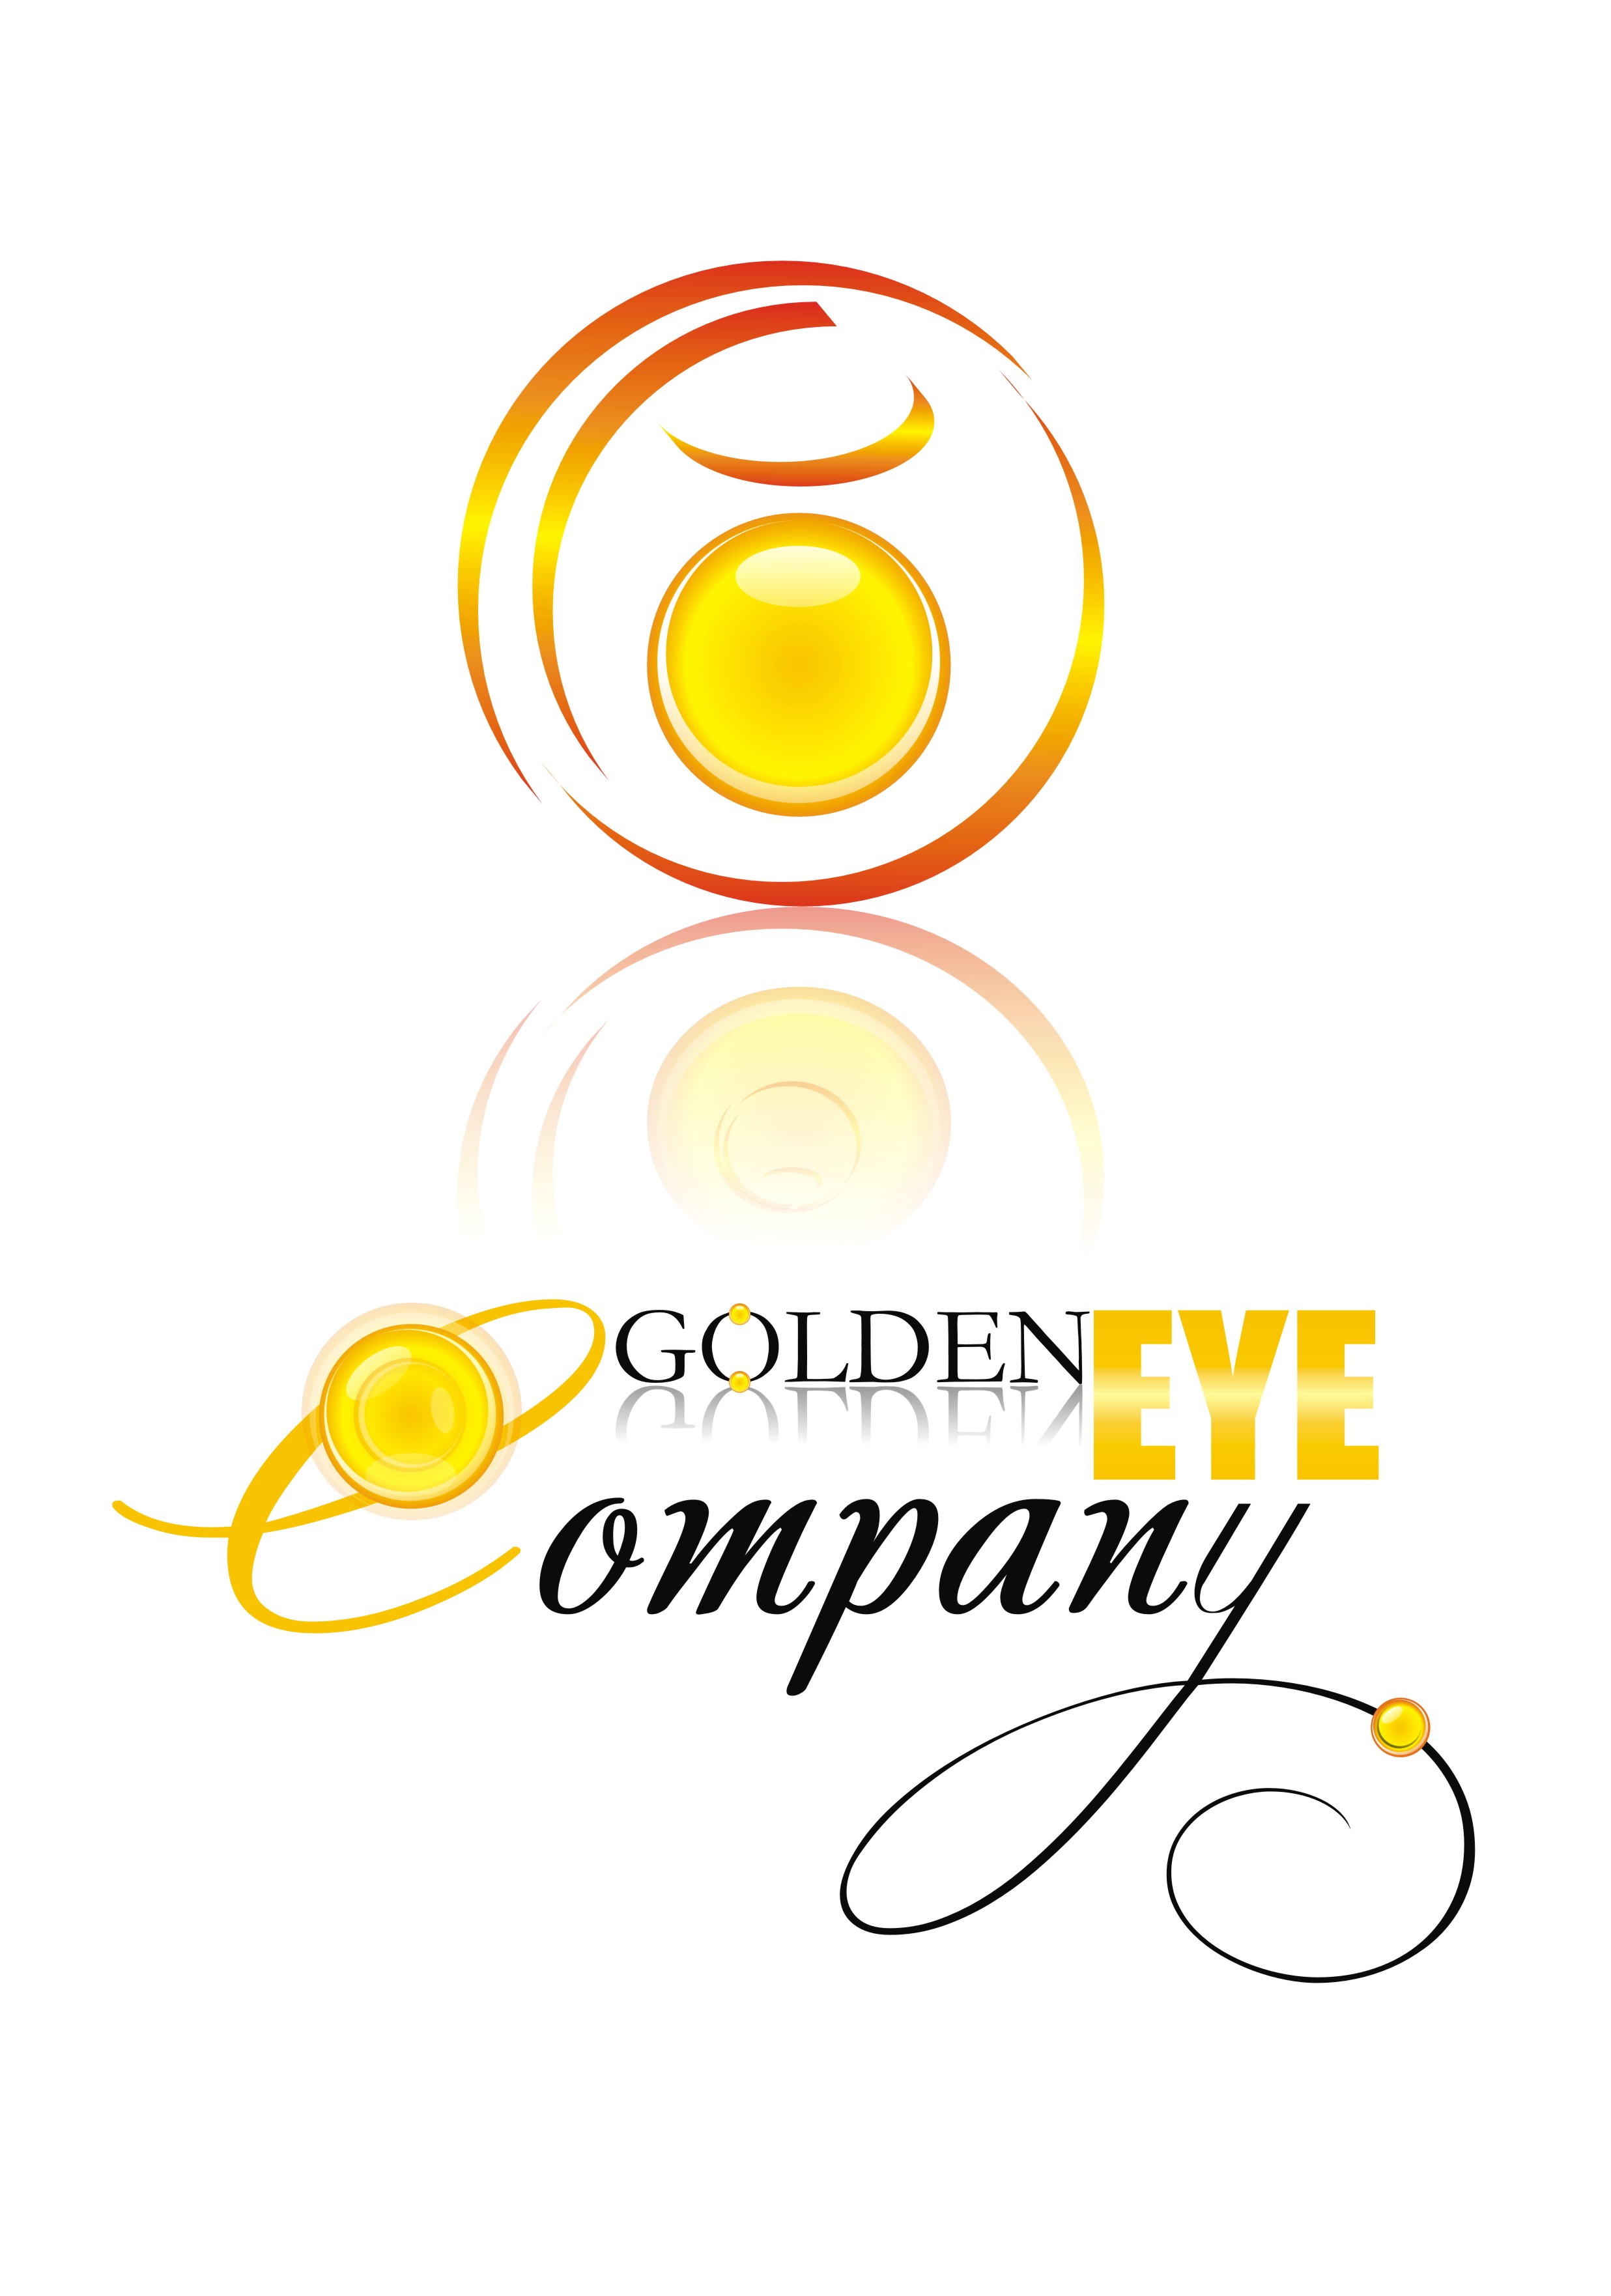 Golden eye